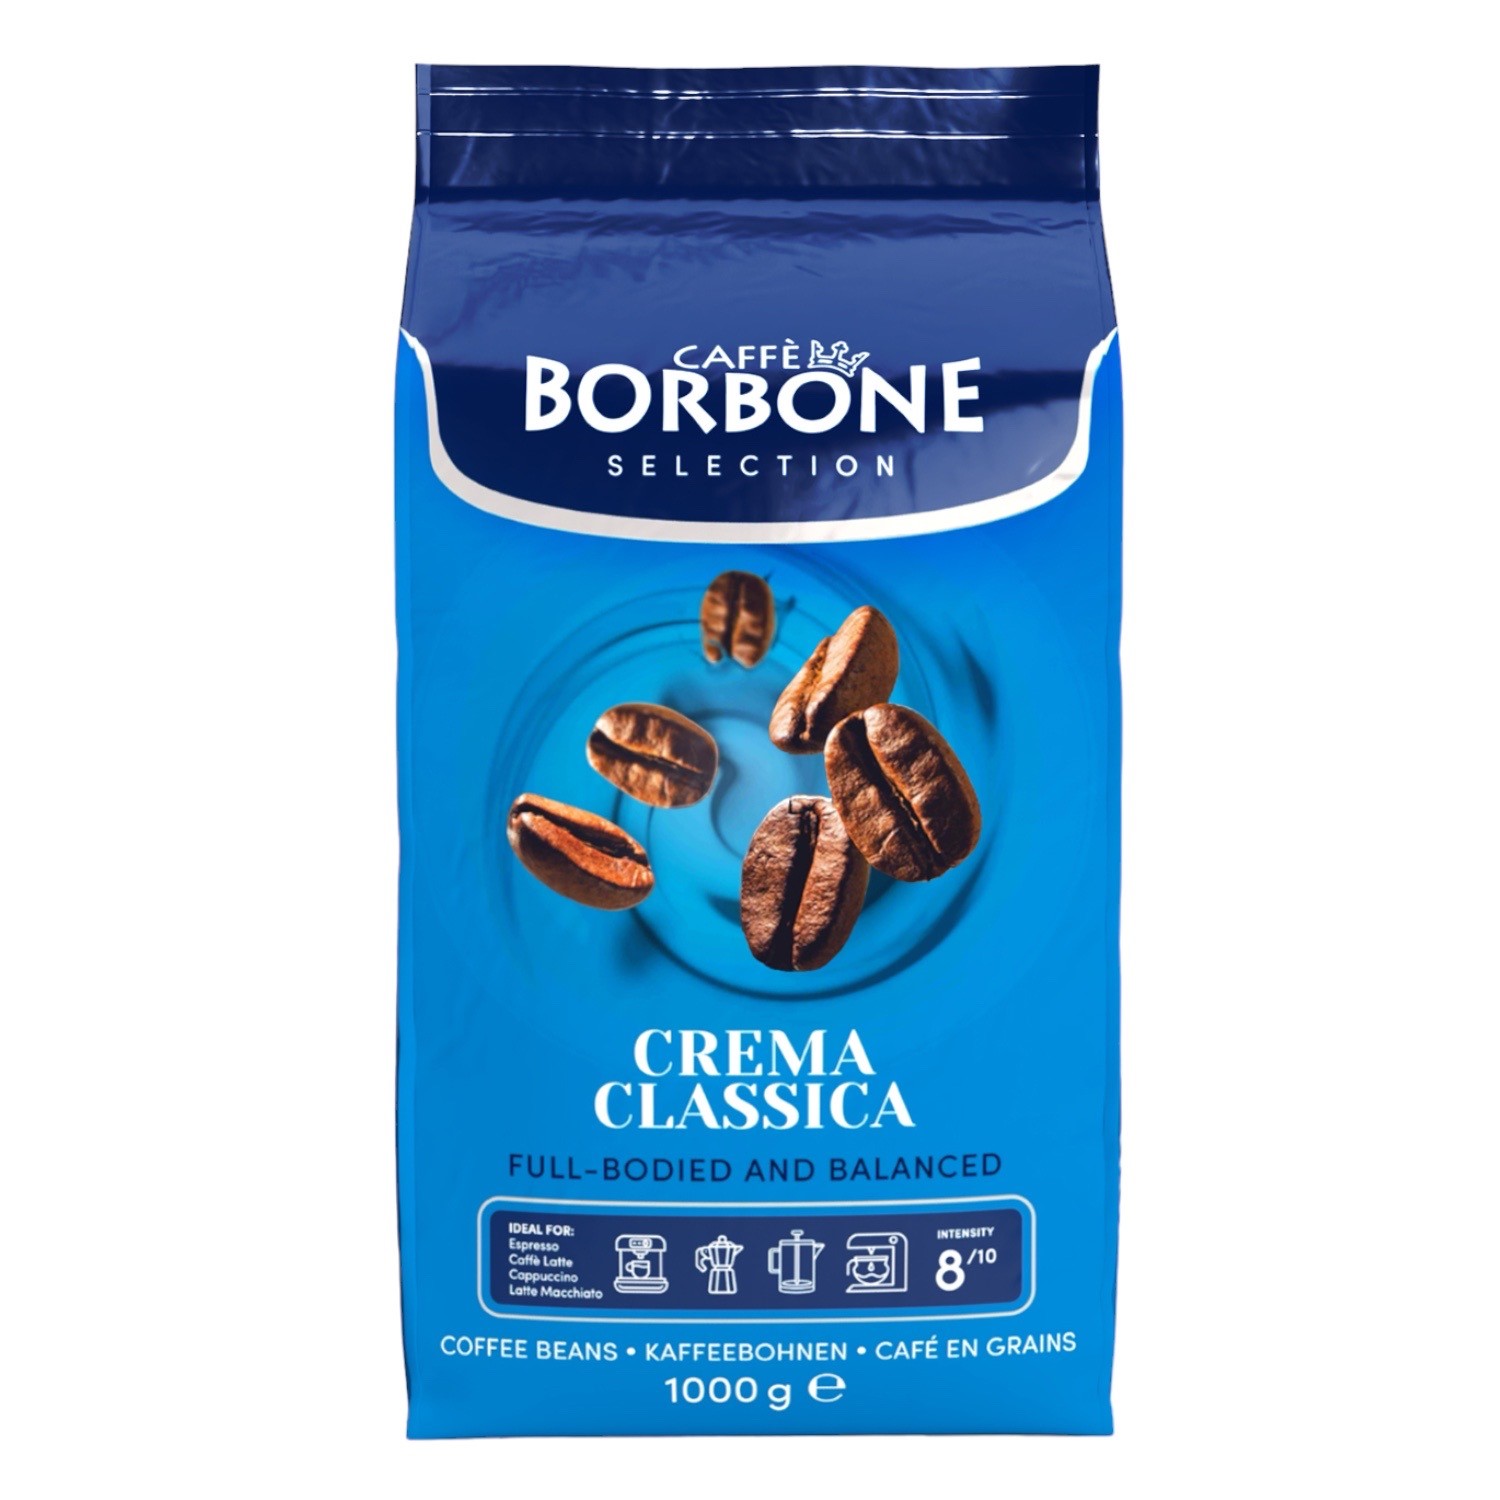 Caffé Borbone Selection Crema Classica (1x 1000g)